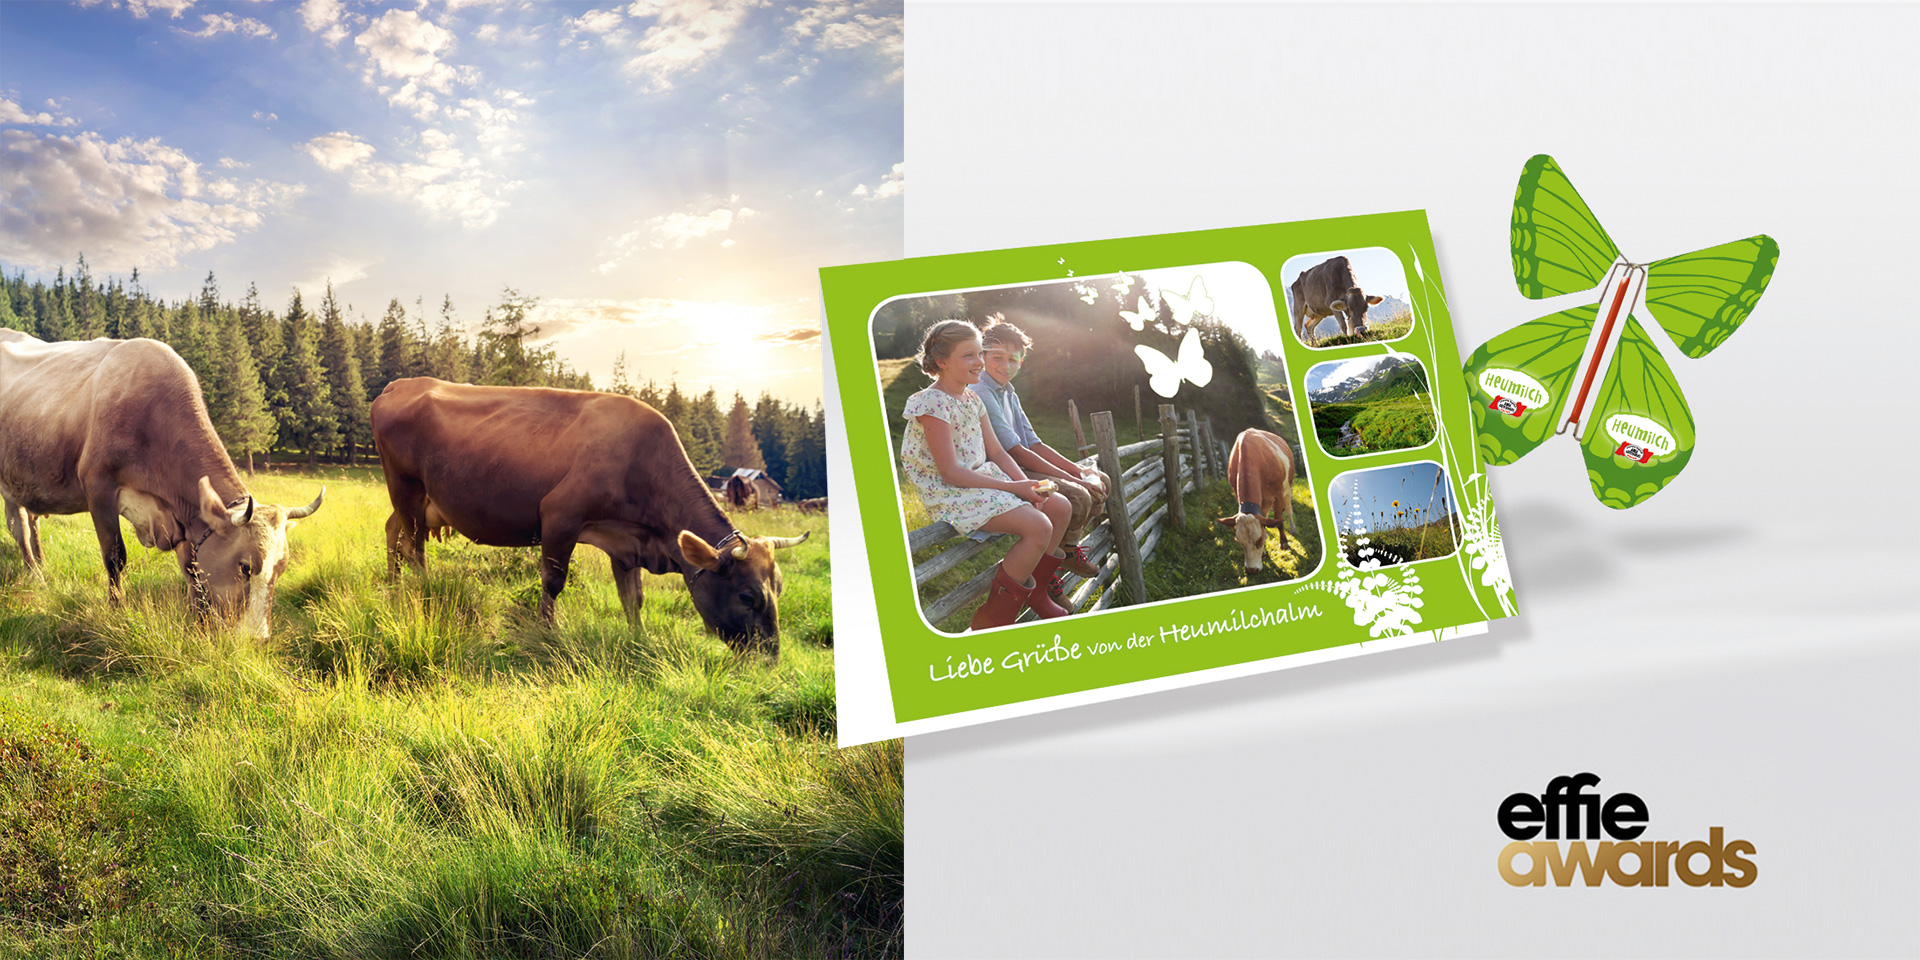 Links im Bild sind zwei Kühe auf einer Weide zu sehen, die Gras fressen. Rechts daneben ist eine grün gestaltete Postkarte mit der Fotografie einer Kuhweide abgebildet. Auf einem angrenzendem Holz Zaun sitzen lächelnd ein Mädchen und ein Junge.